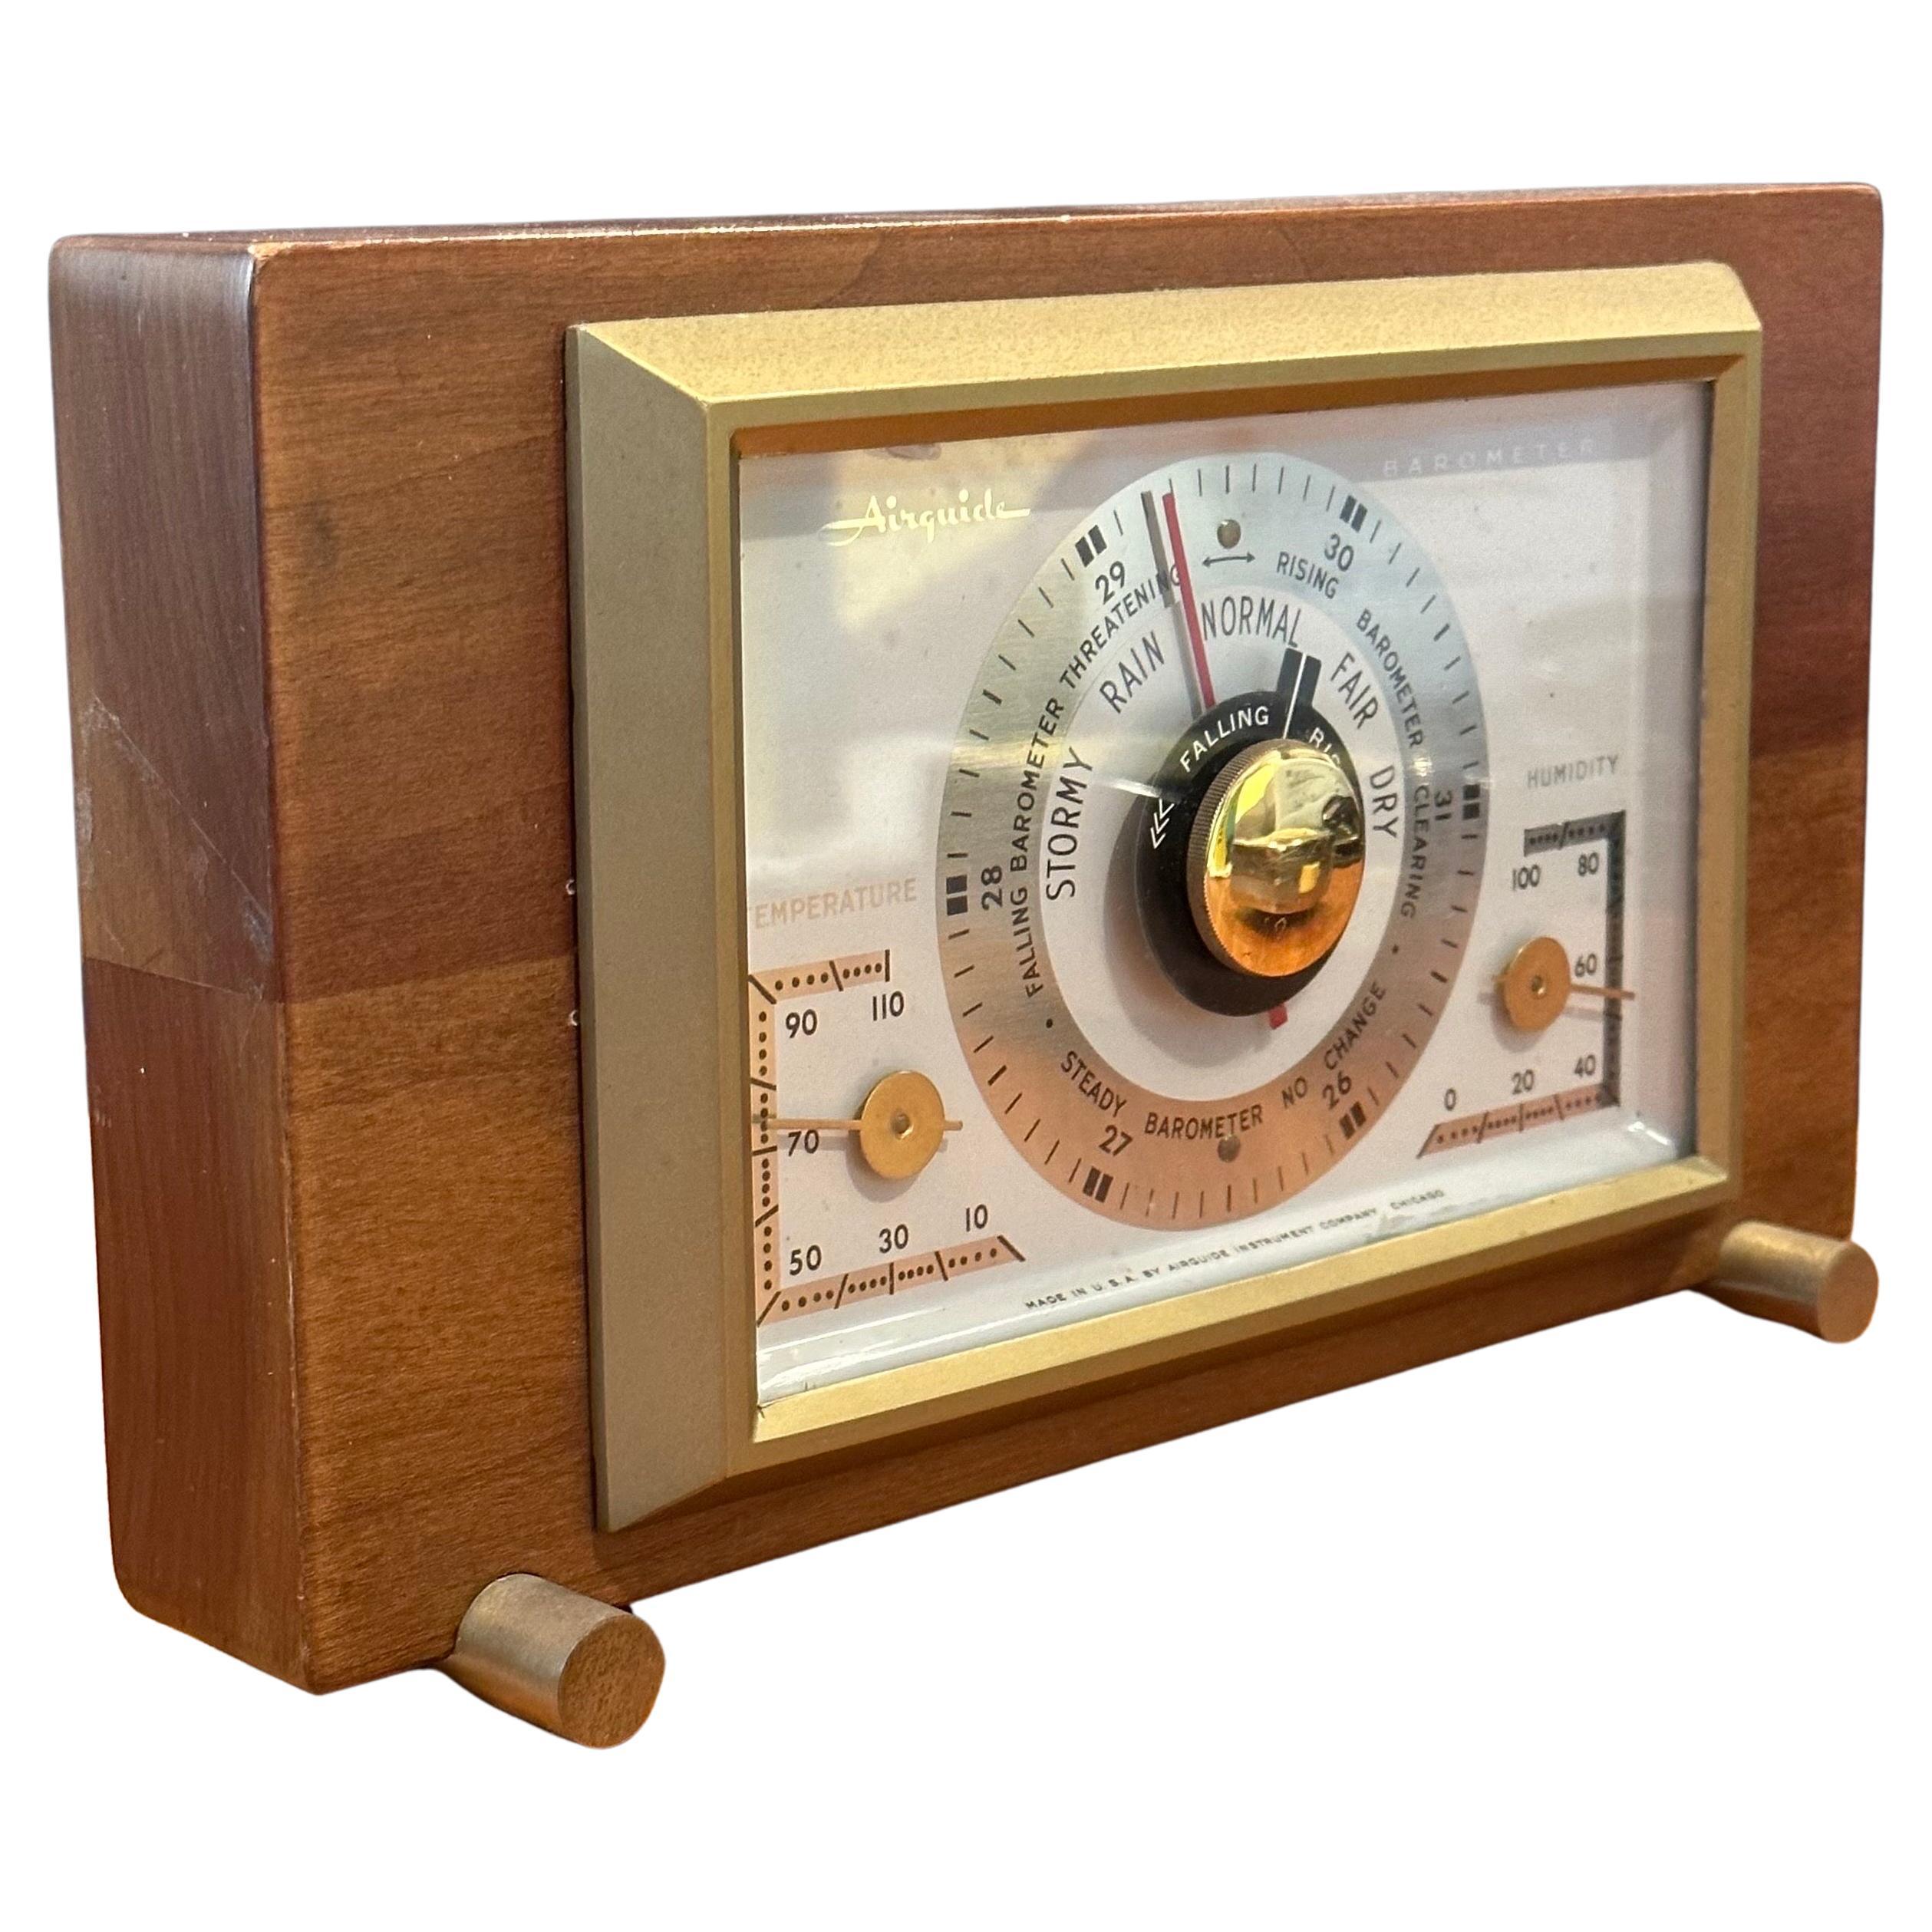 Ein sehr cooles Tischbarometer / Wetterstation von AirGuide Instrument Company, ca. 1950er Jahre.  Das Gerät ist in einem Walnussgehäuse mit Messingfüßen und -akzenten verpackt.  Er verfügt über Anzeigen und Instrumente, die Sie über die aktuelle